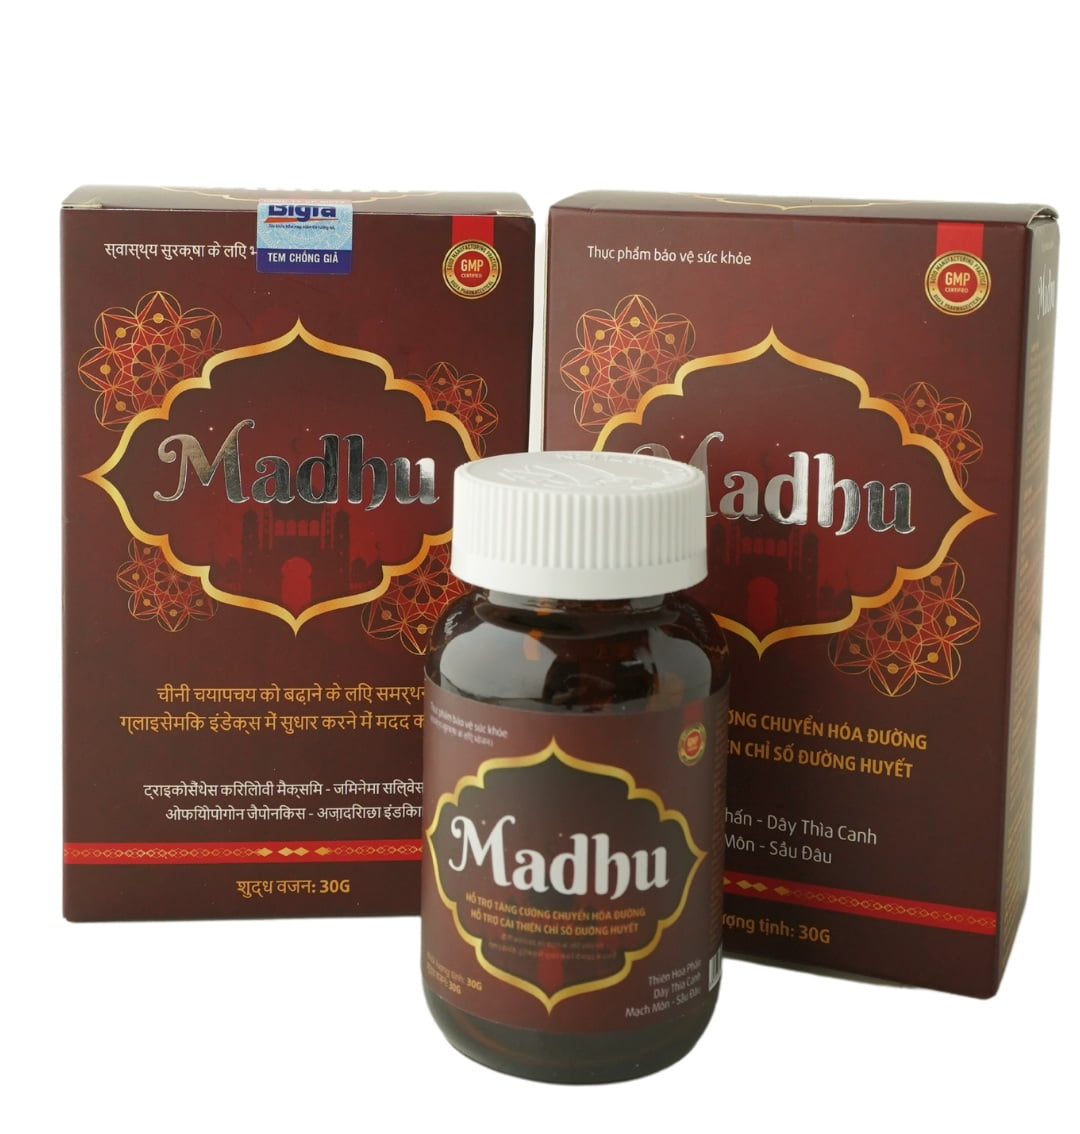 Viên uống hỗ trợ ổn định đường huyết Madhu